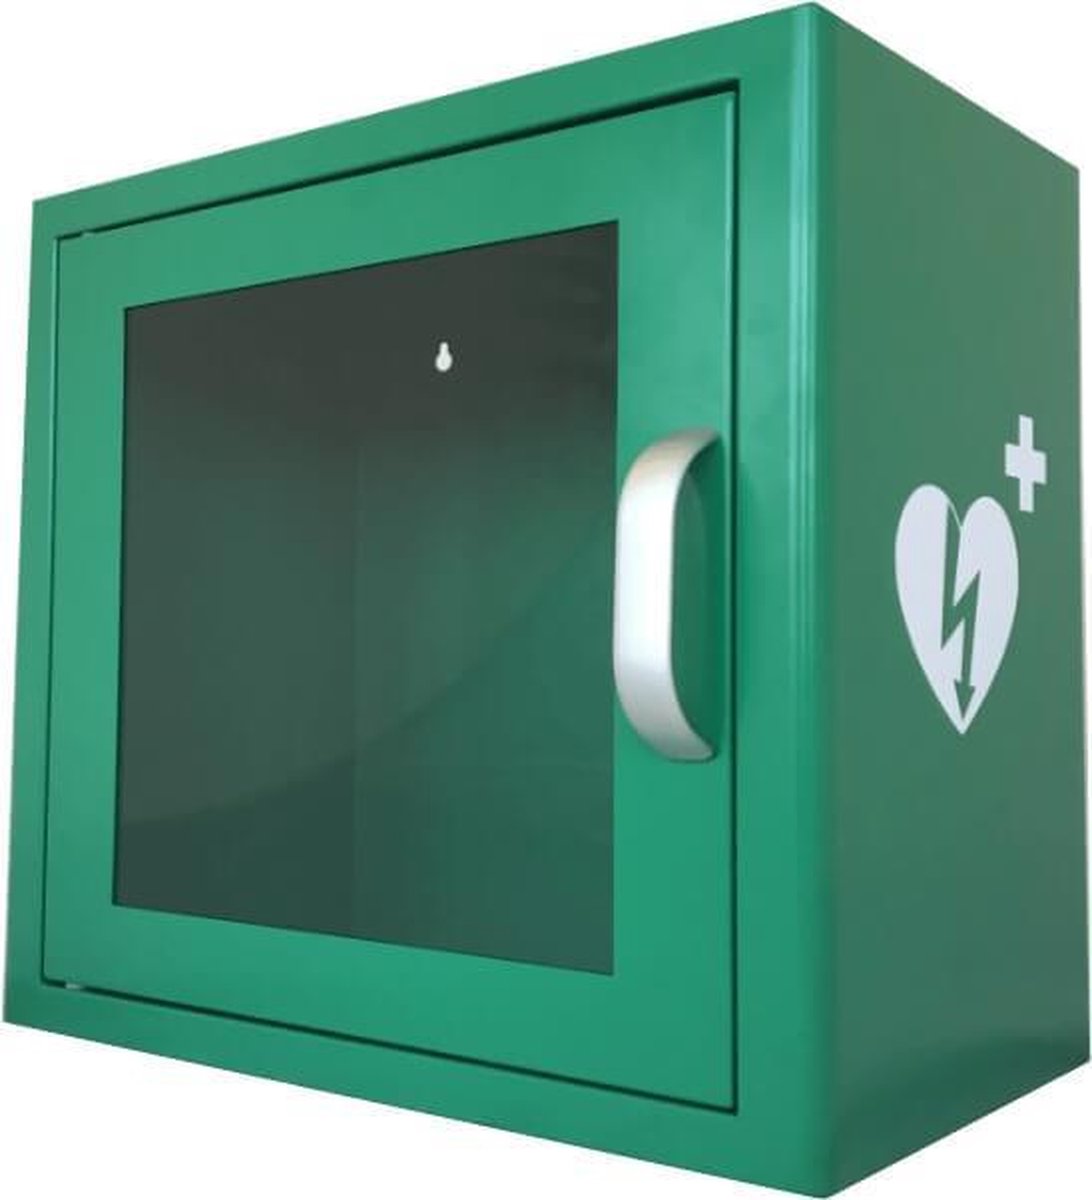 AED wandkast universeel met alarm